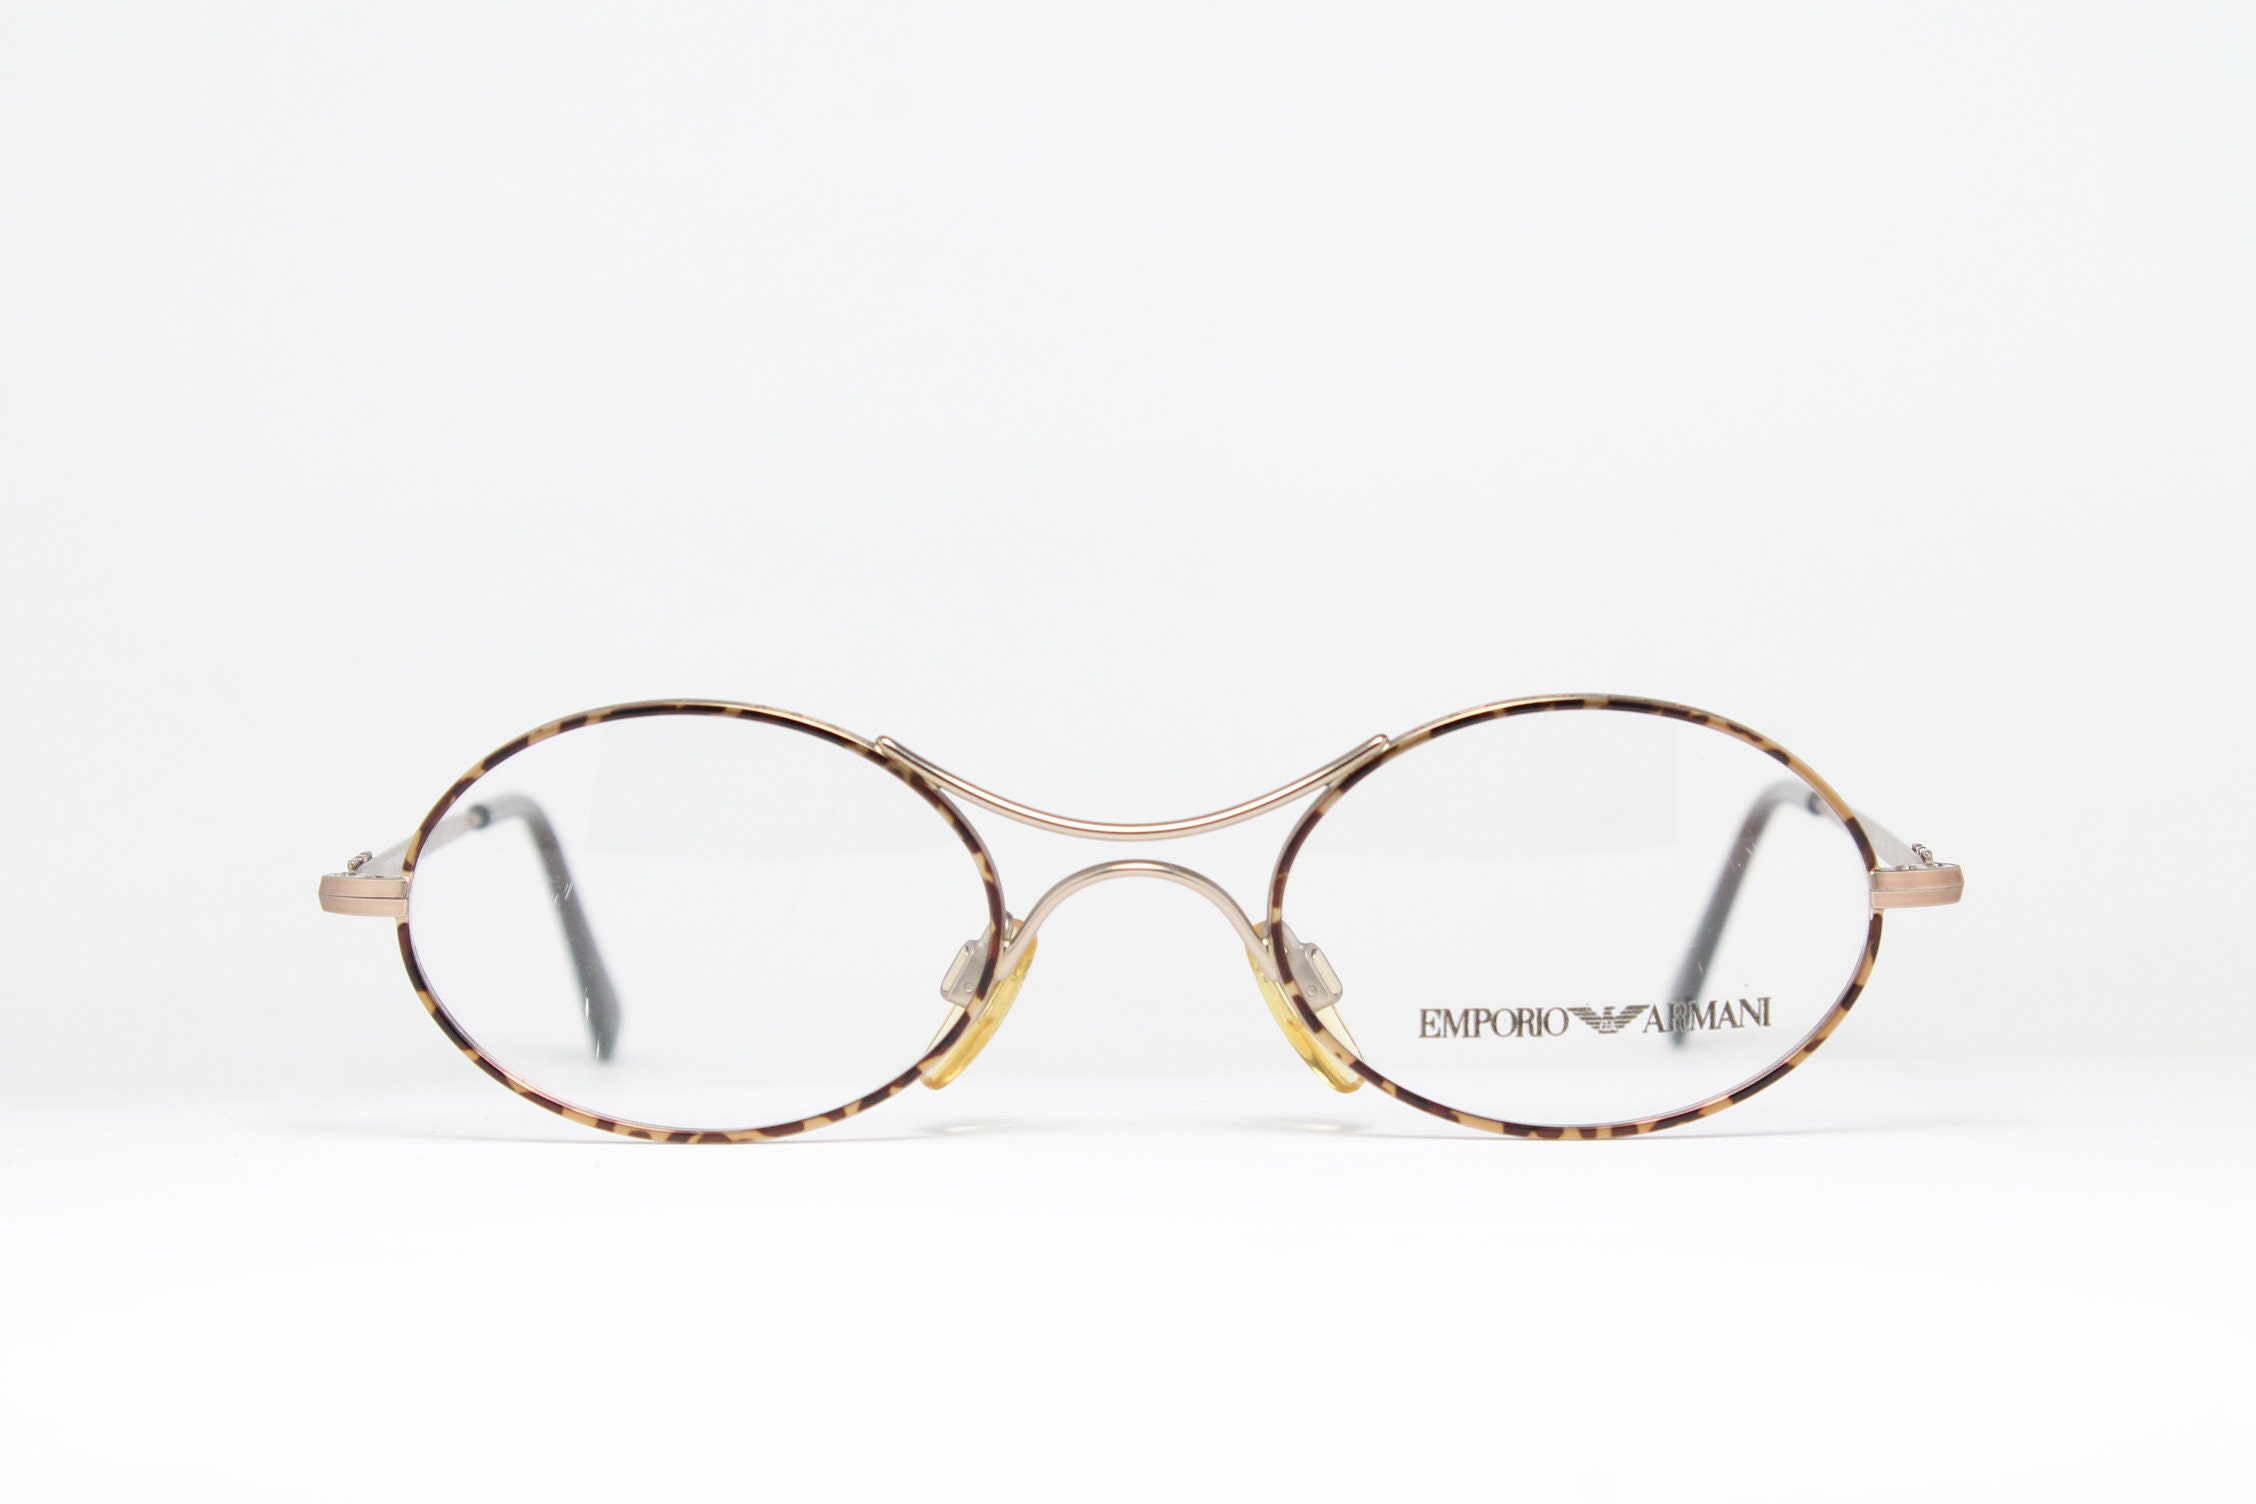 Giorgio Armani 1010 1128 Vintage 90s Glasses Frames – Ed & Sarna Vintage  Eyewear